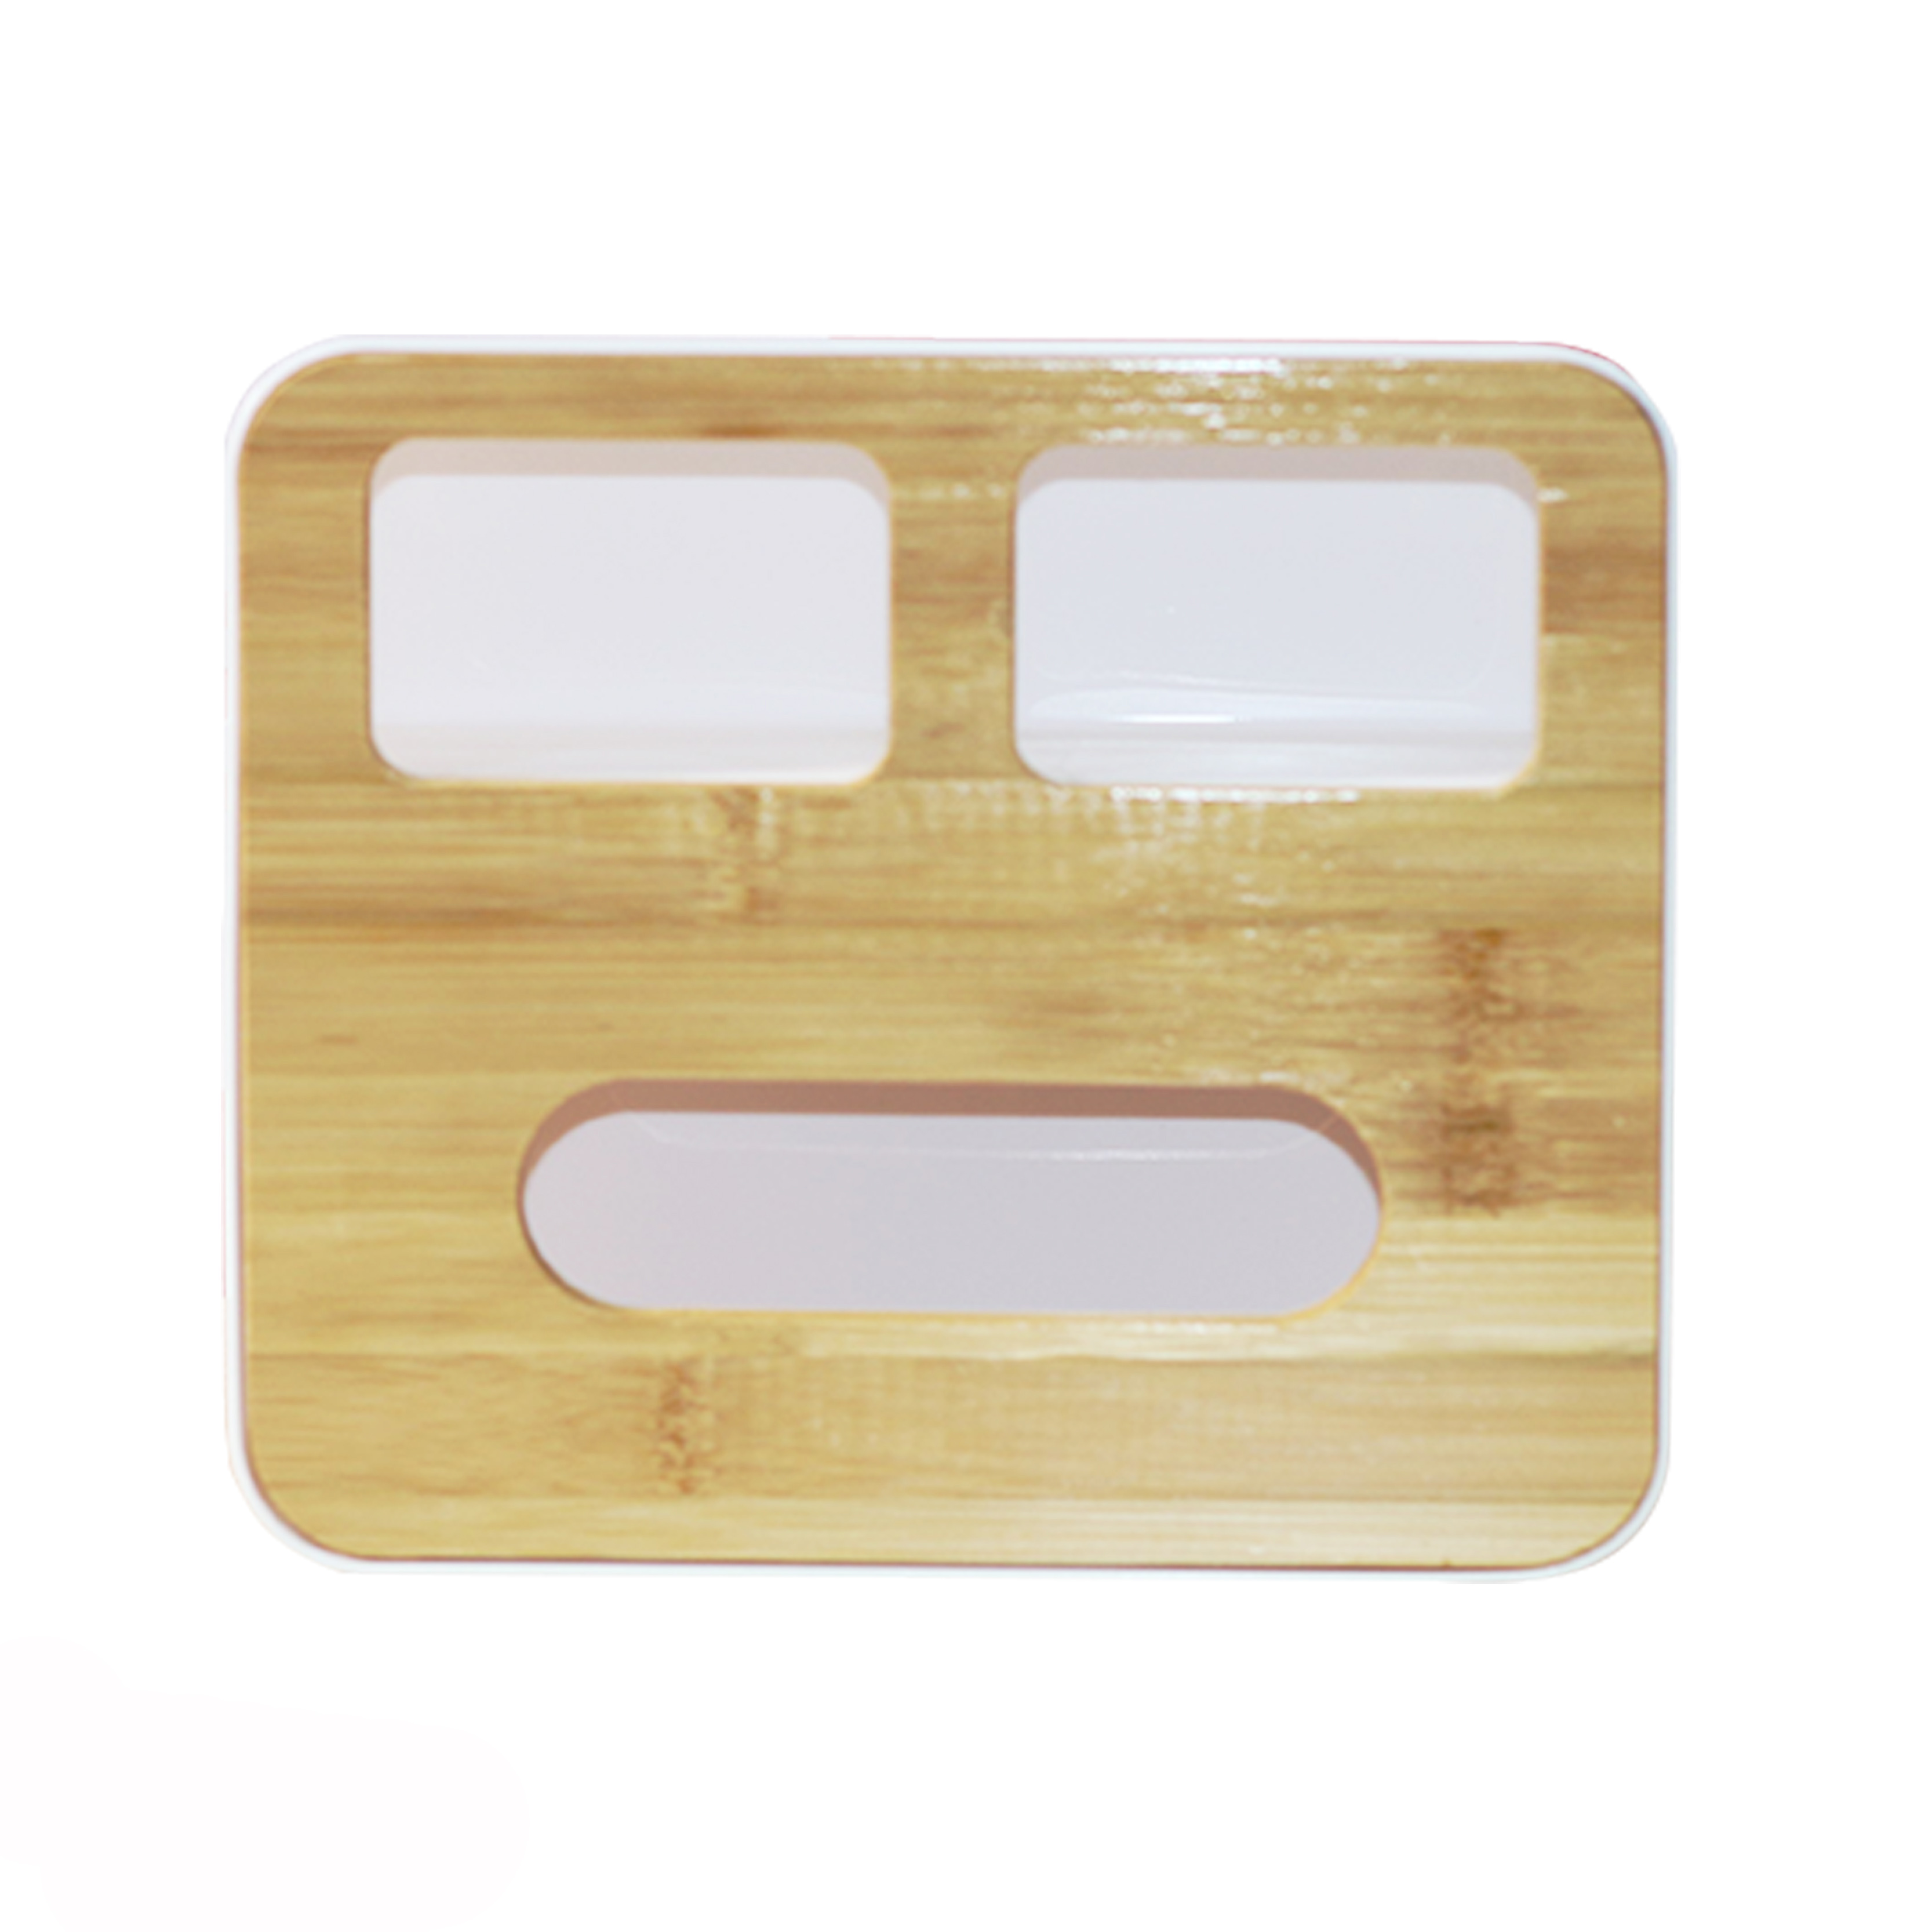 Hộp giấy rút mặt gỗ 3 ngăn đặt bàn cao cấp